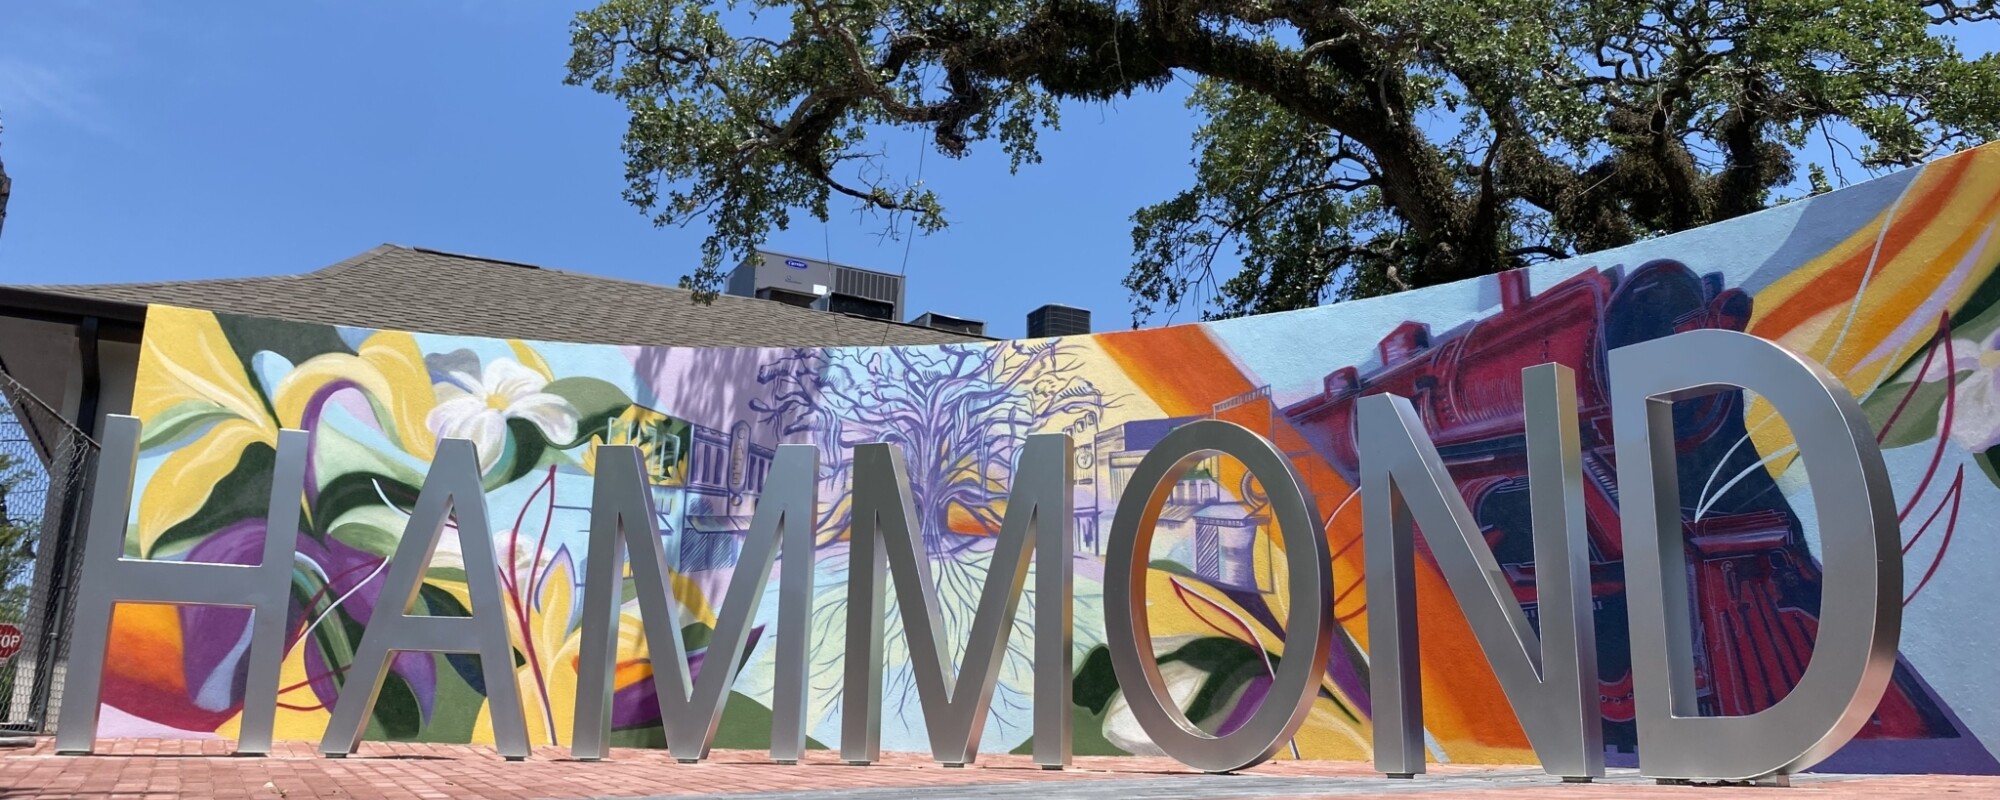 Unas letras independientes deletrean "HAMMOND" delante de una pared curva decorada con un mural de vivos colores.